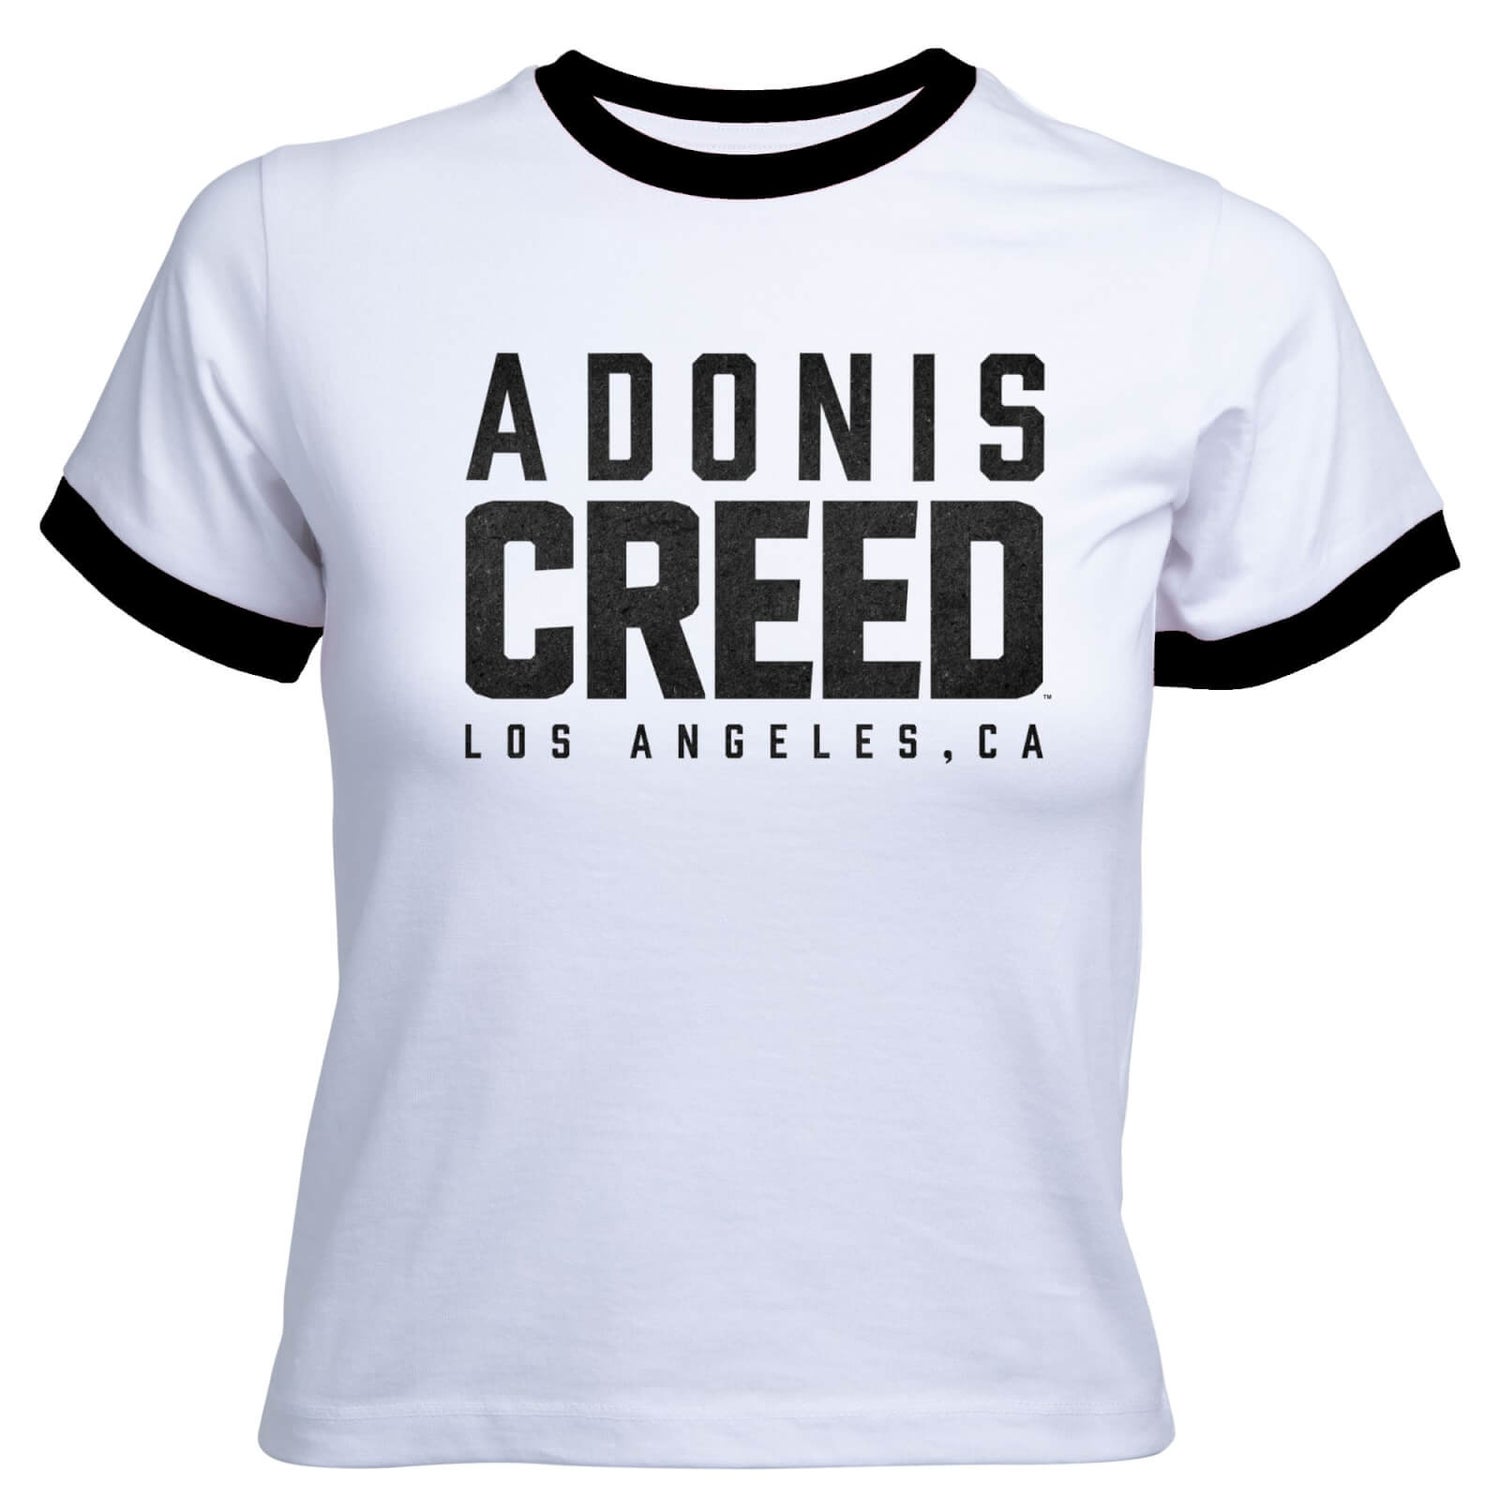 Creed Adonis Creed LA Logo Women's Cropped Ringer T-Shirt - White Black